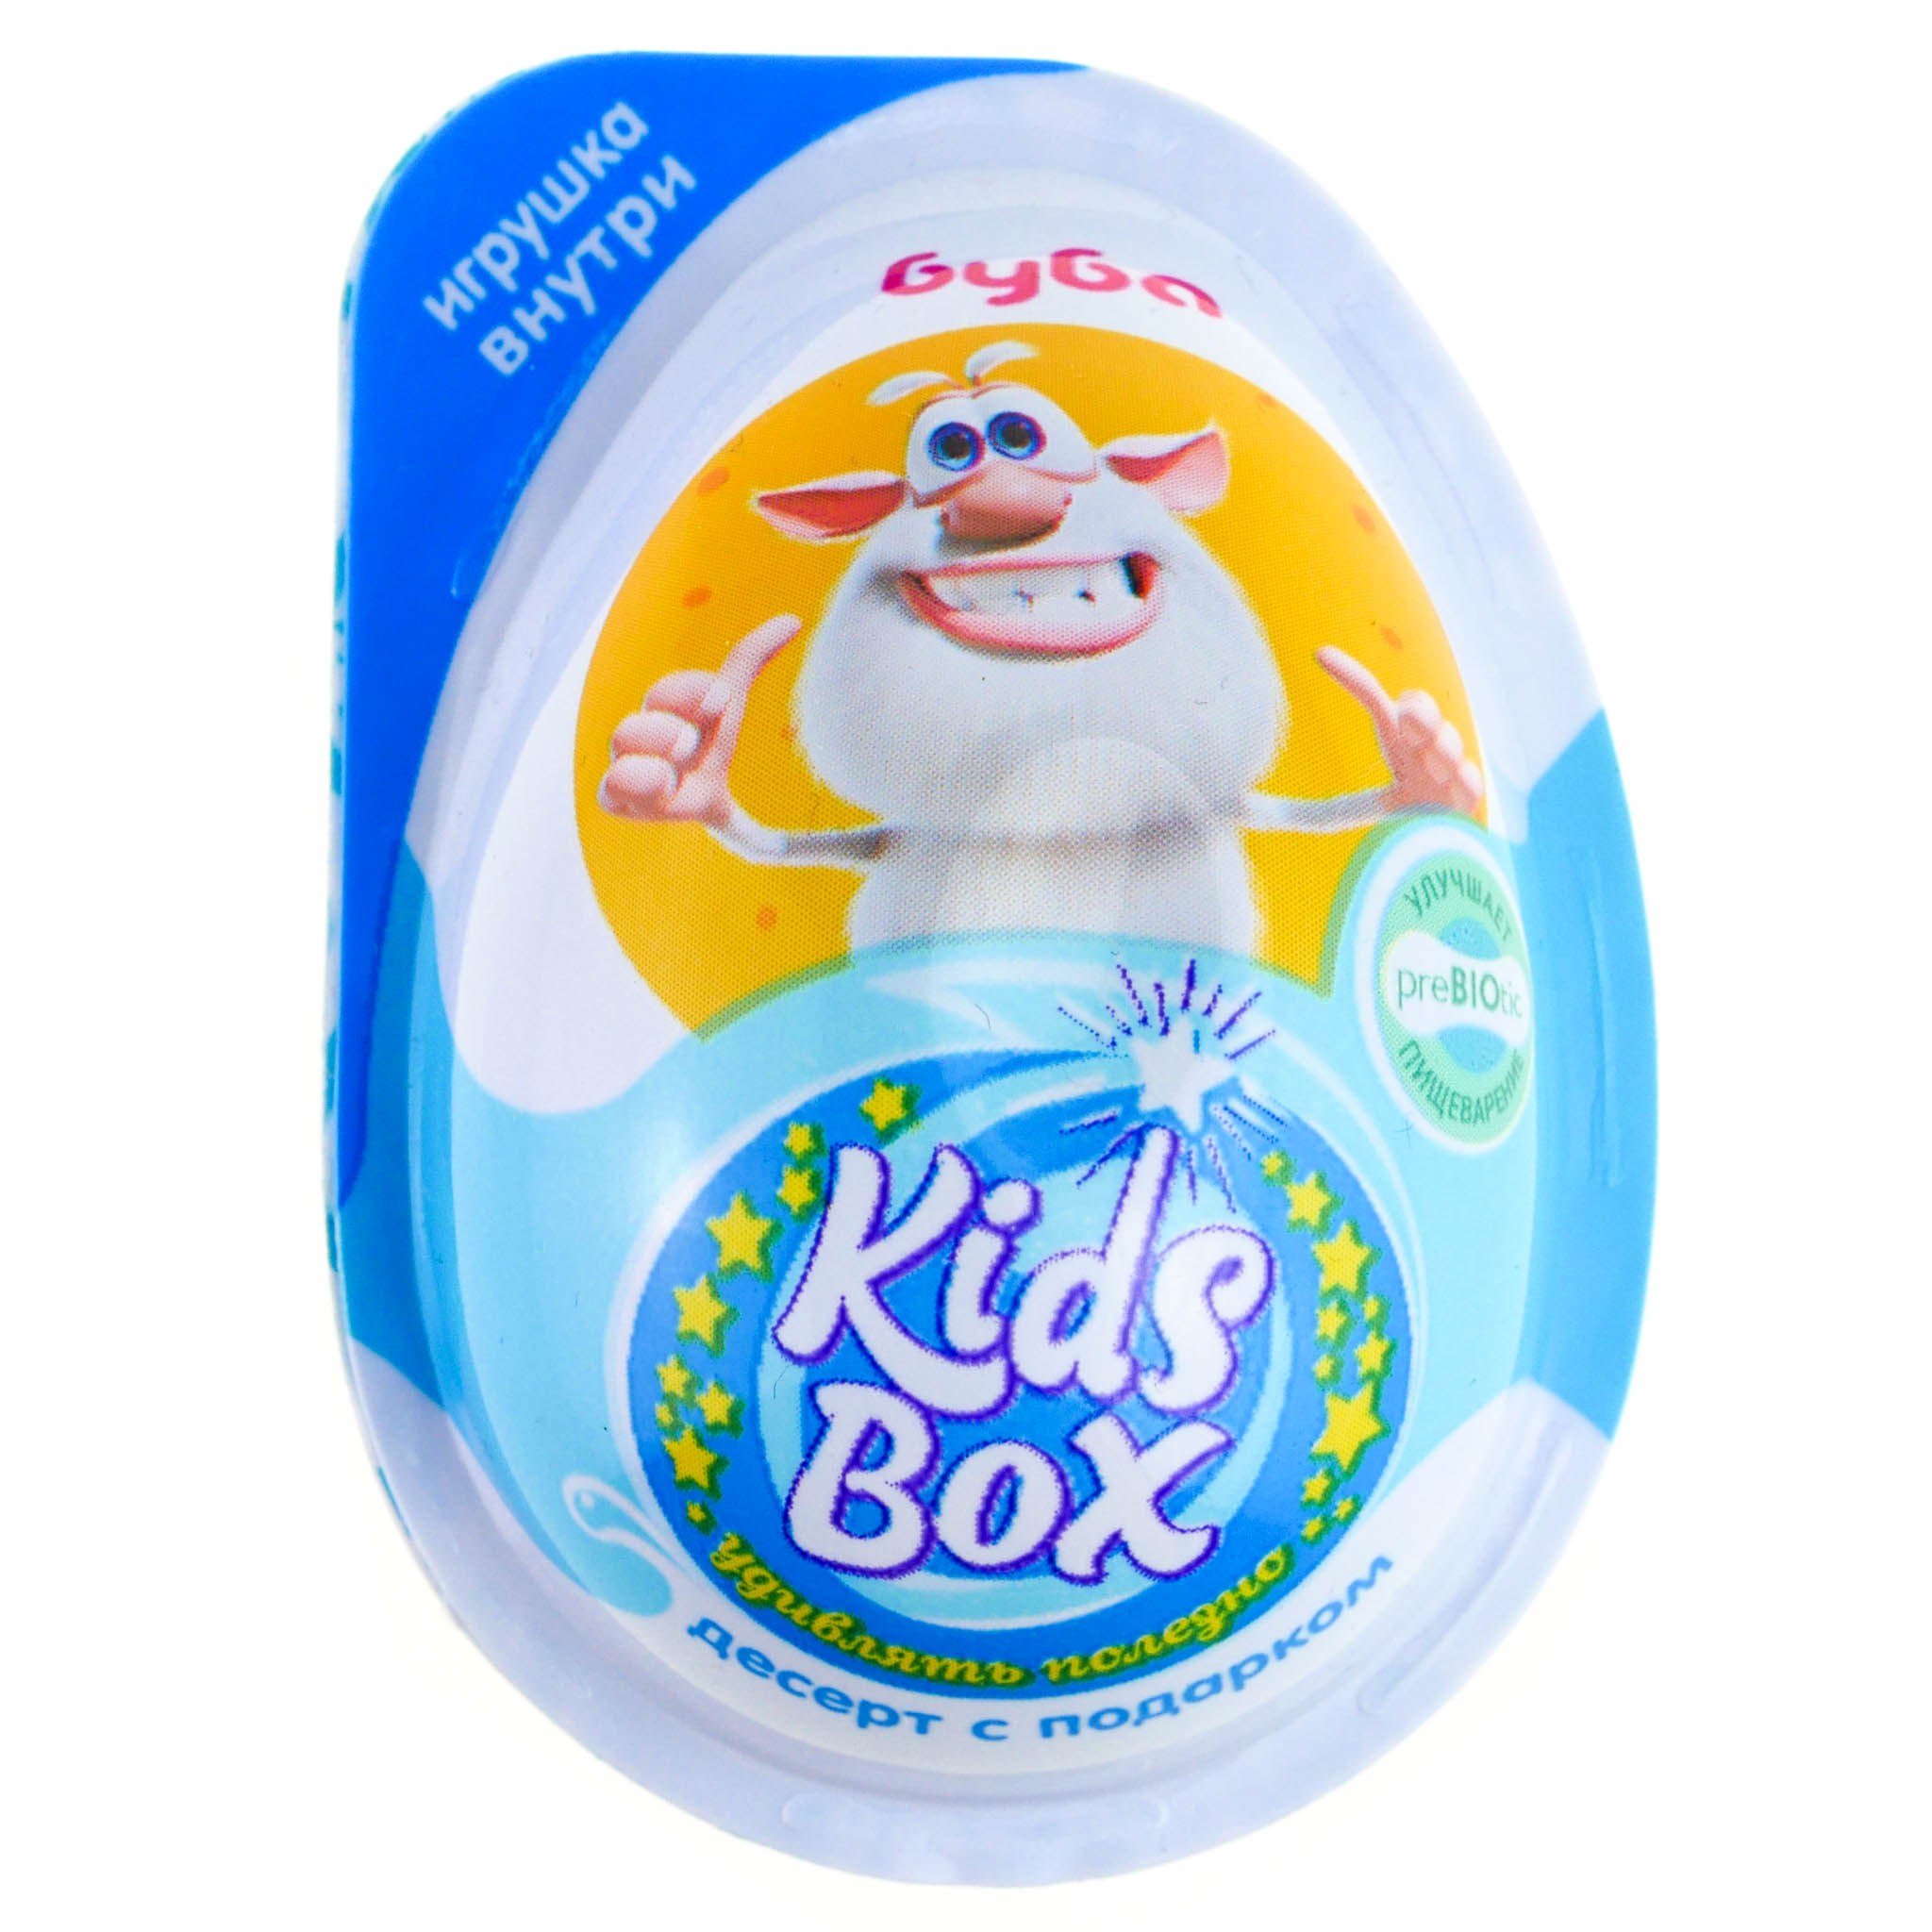 Буба бокс. Яйца Буба Kids Box. Шоколадное яйцо Буба Kids Box. Яйцо десерт с подарком Кидсбокс Буба 20 г. Буба шоколадные яйца Конфитрейд.